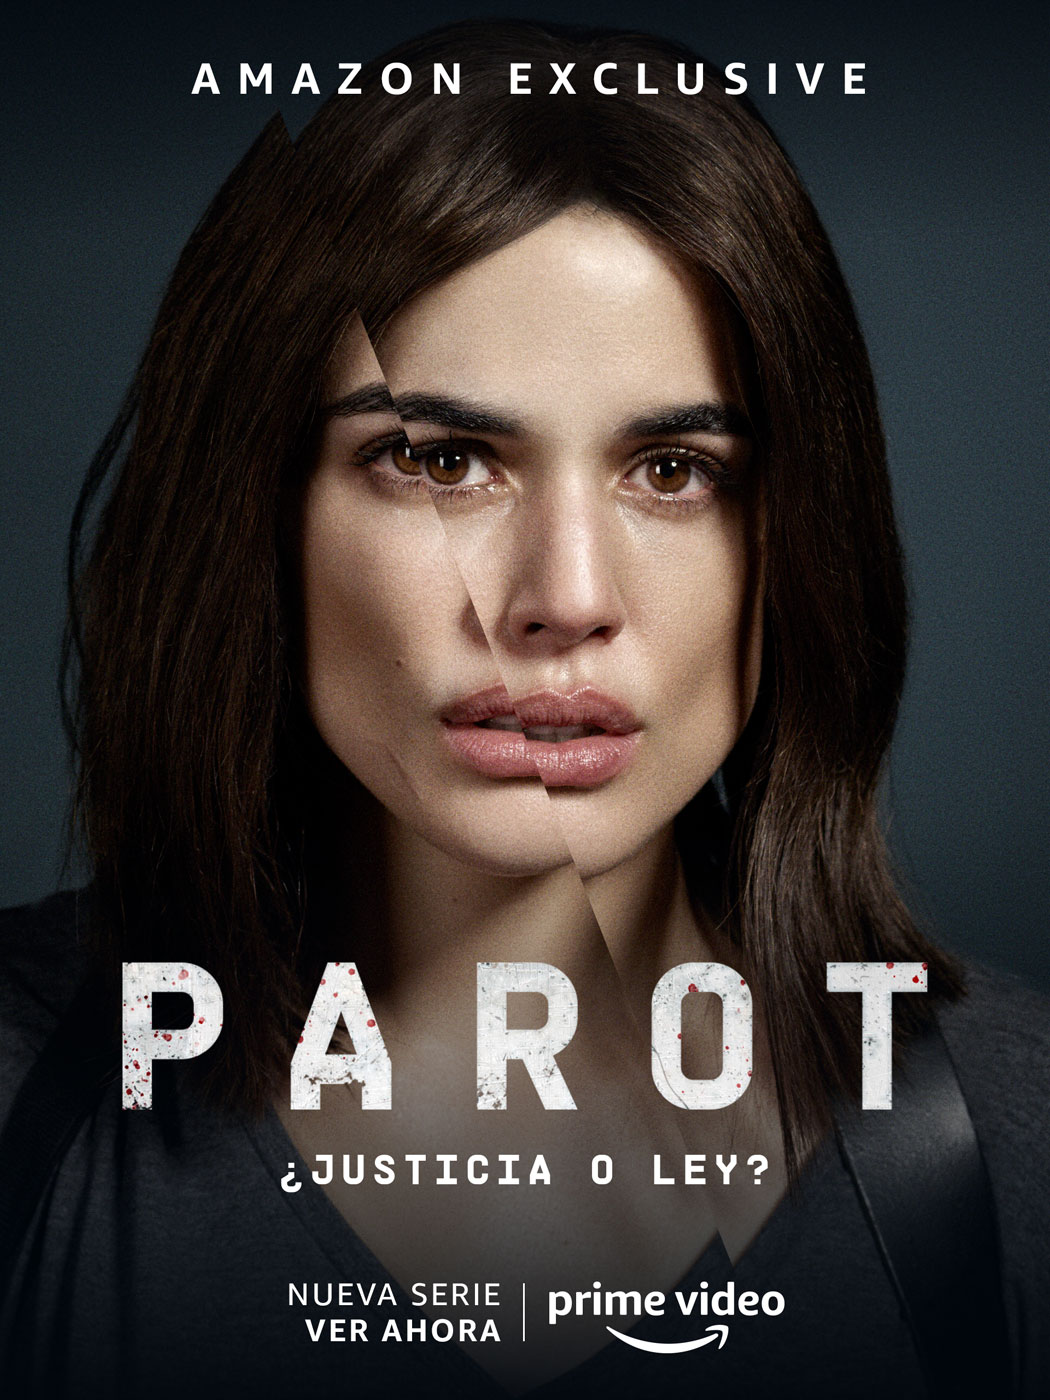 Campaña gráfica creada por Enri Mür junto a JJ Torres para Parot, la serie de Prime Video protagonizada por Adriana Ugarte y Blanca Portillo.